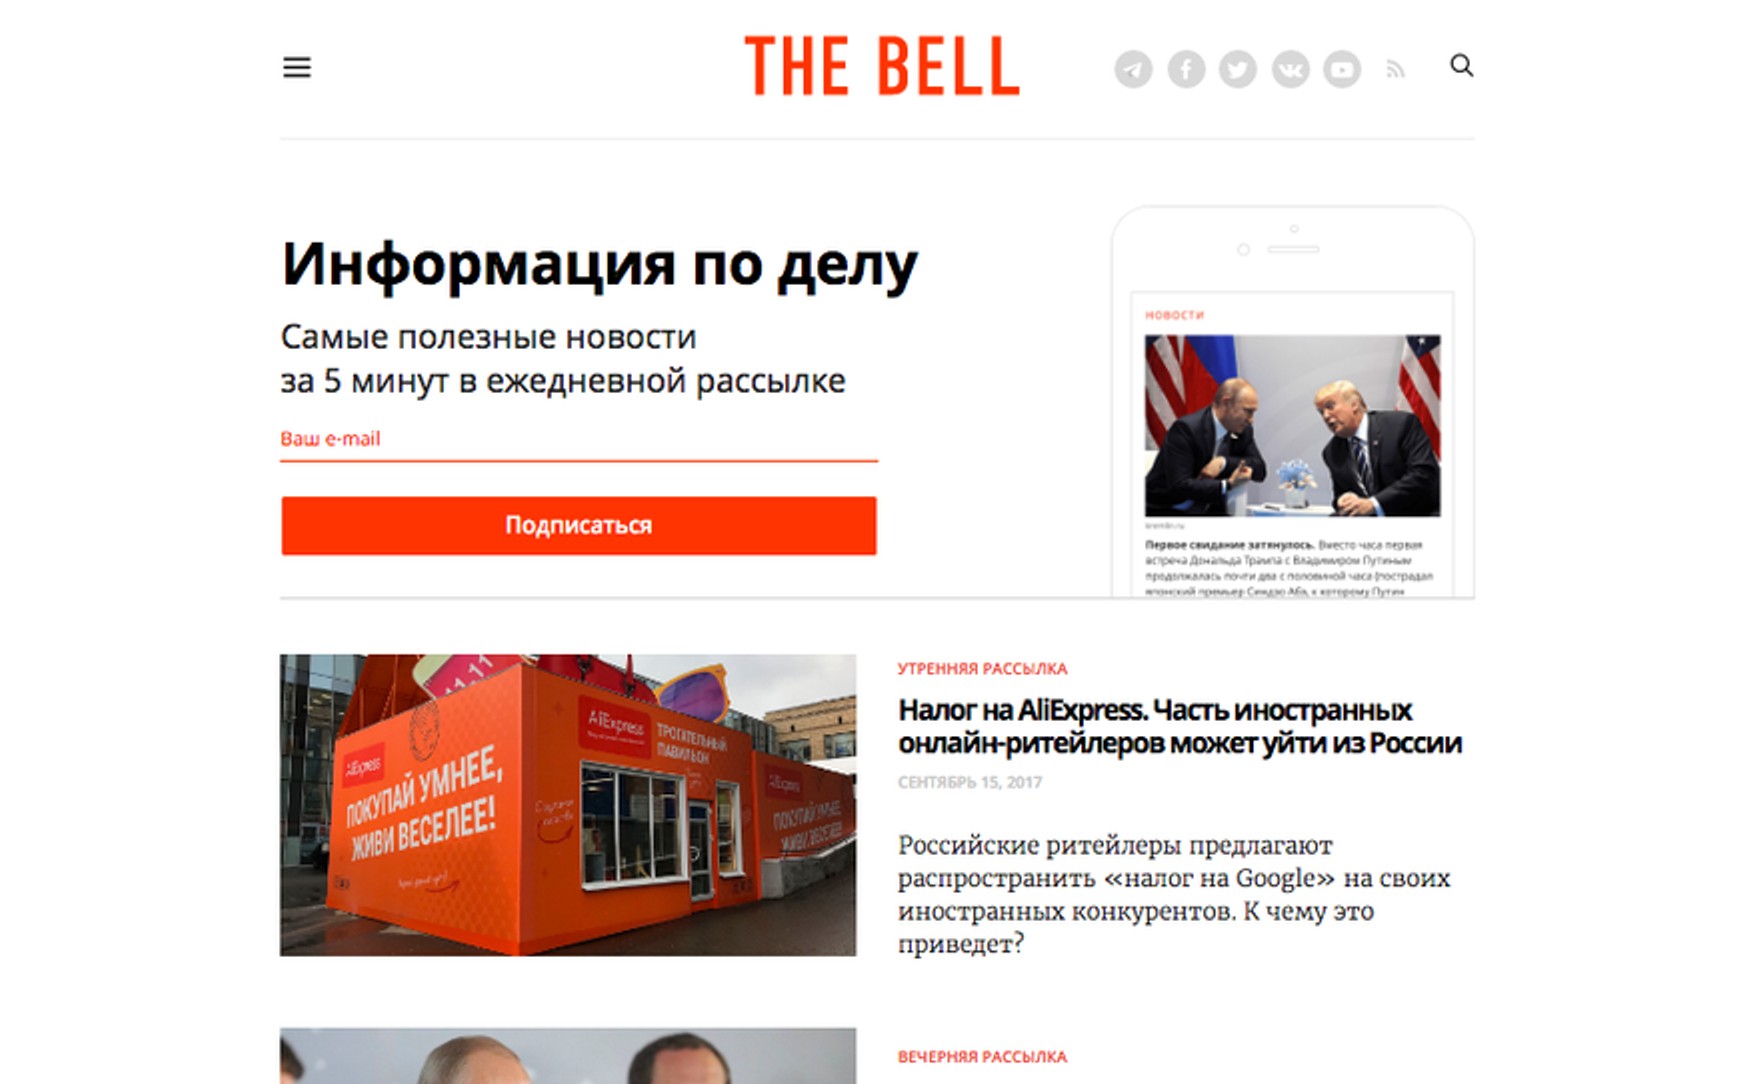 The Bell повідомив про зовнішню атаці на сайт видання